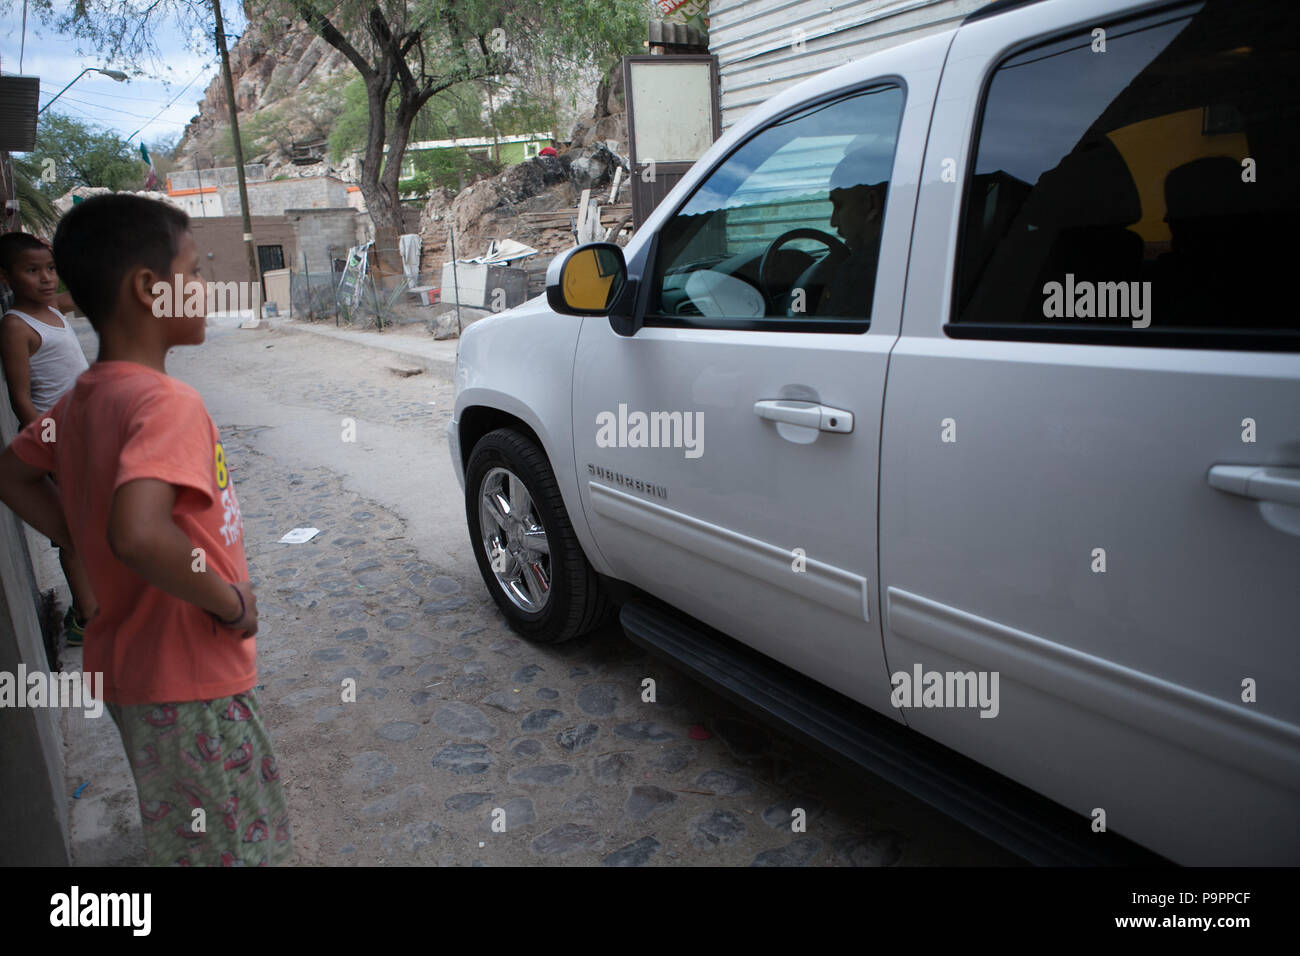 EXCLUSIVO. Lupillo Rivera visita a su familia (tios, primos) en hermosillo Sonora, llevo flores a la casa de su abuela llamada Dolores Real (Lola) p Stock Photo